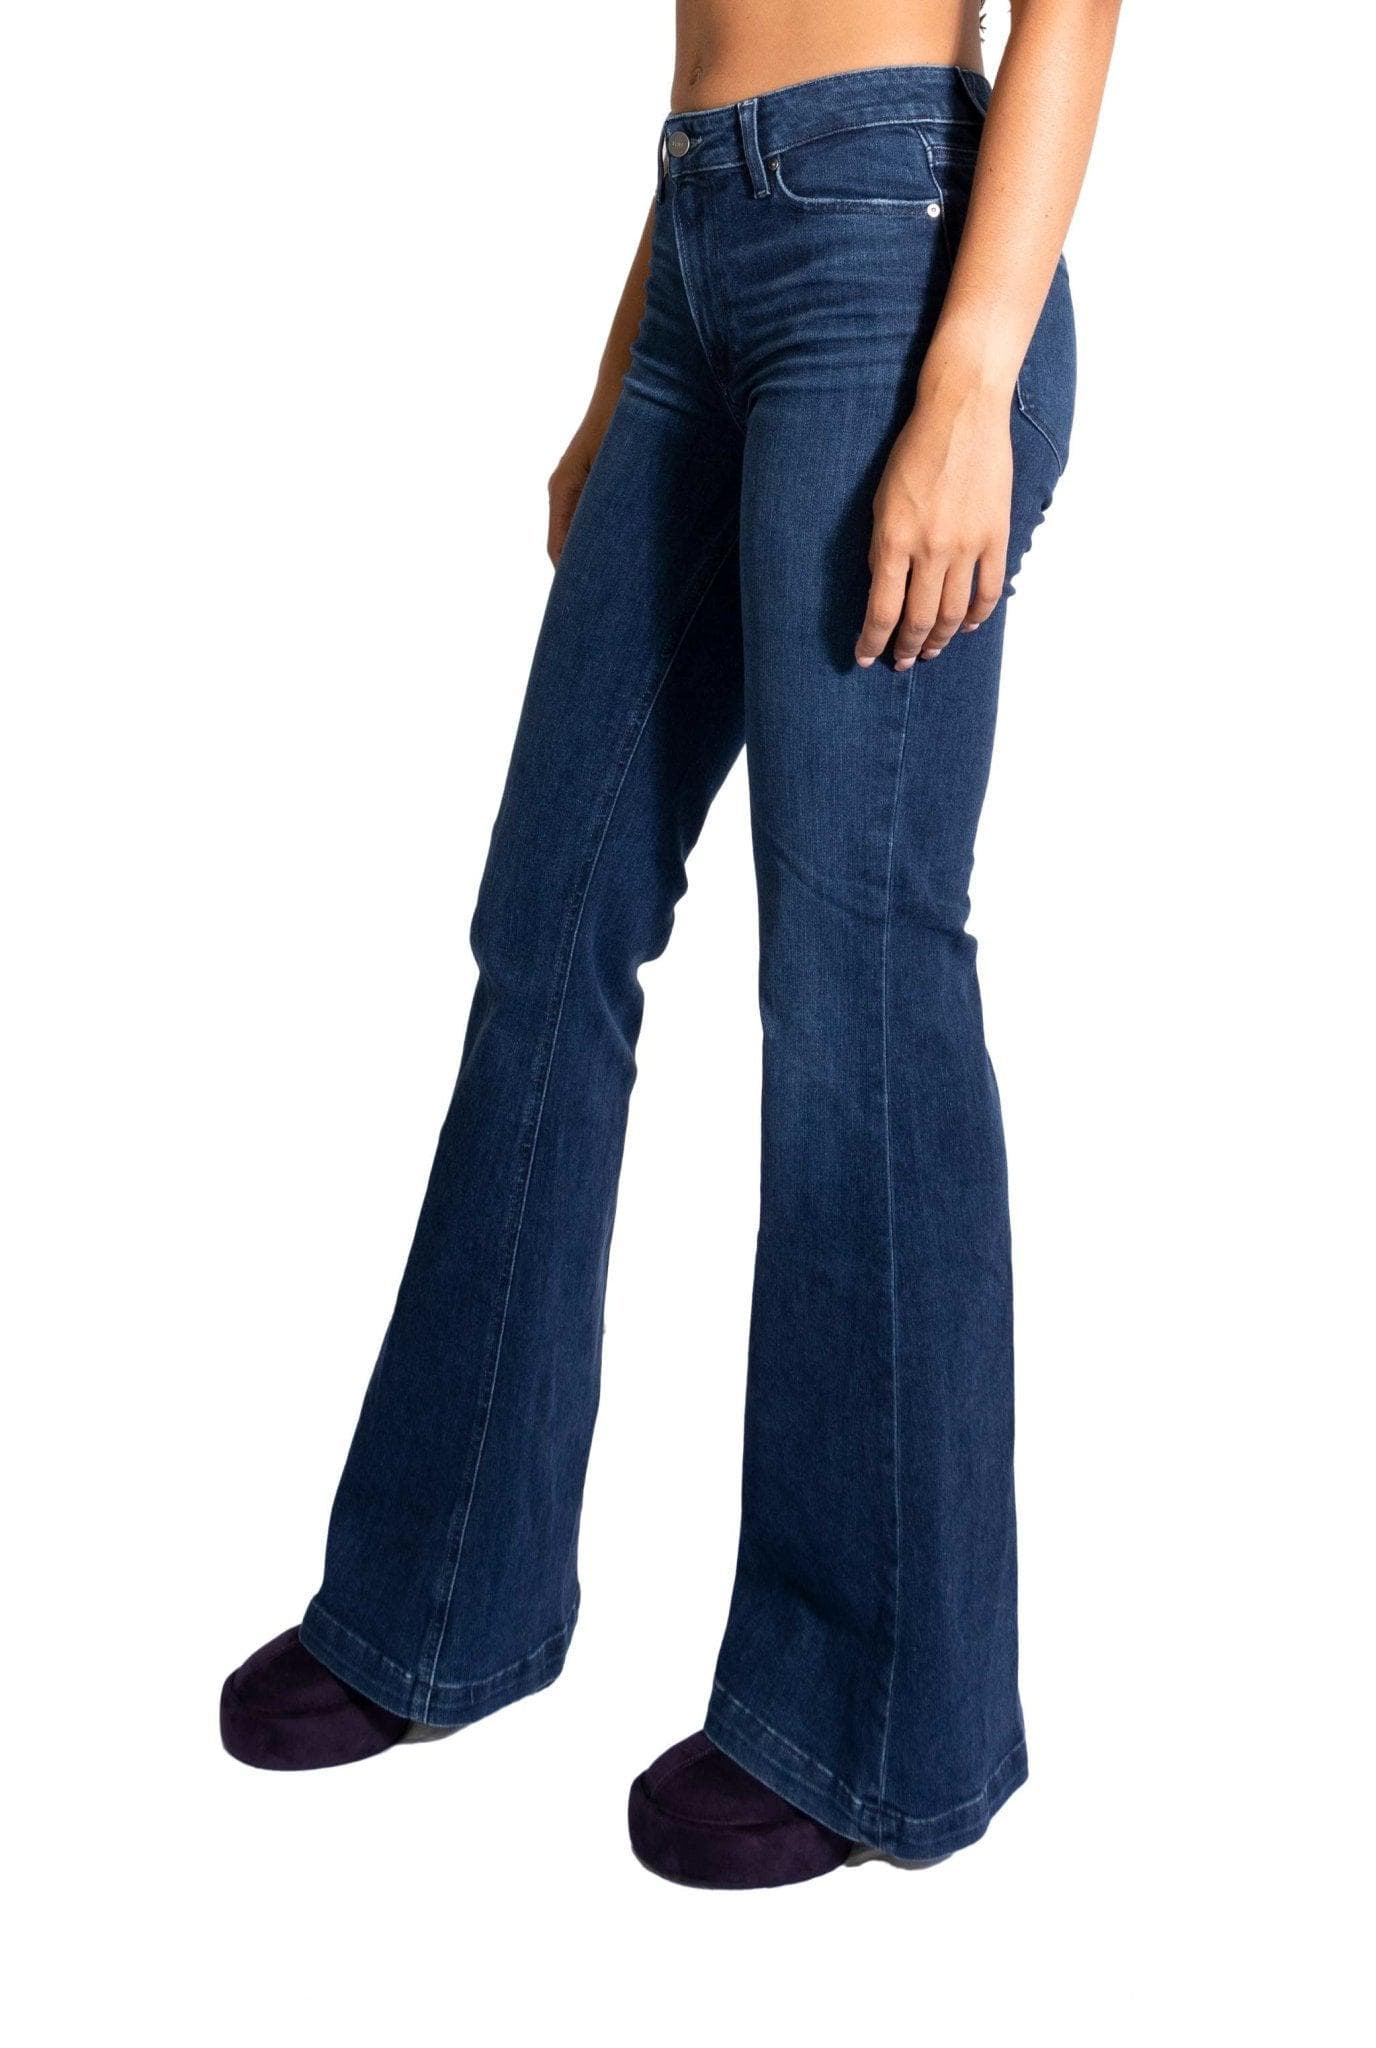 Jeans Geneive modern- Paige -Giorgioquinto